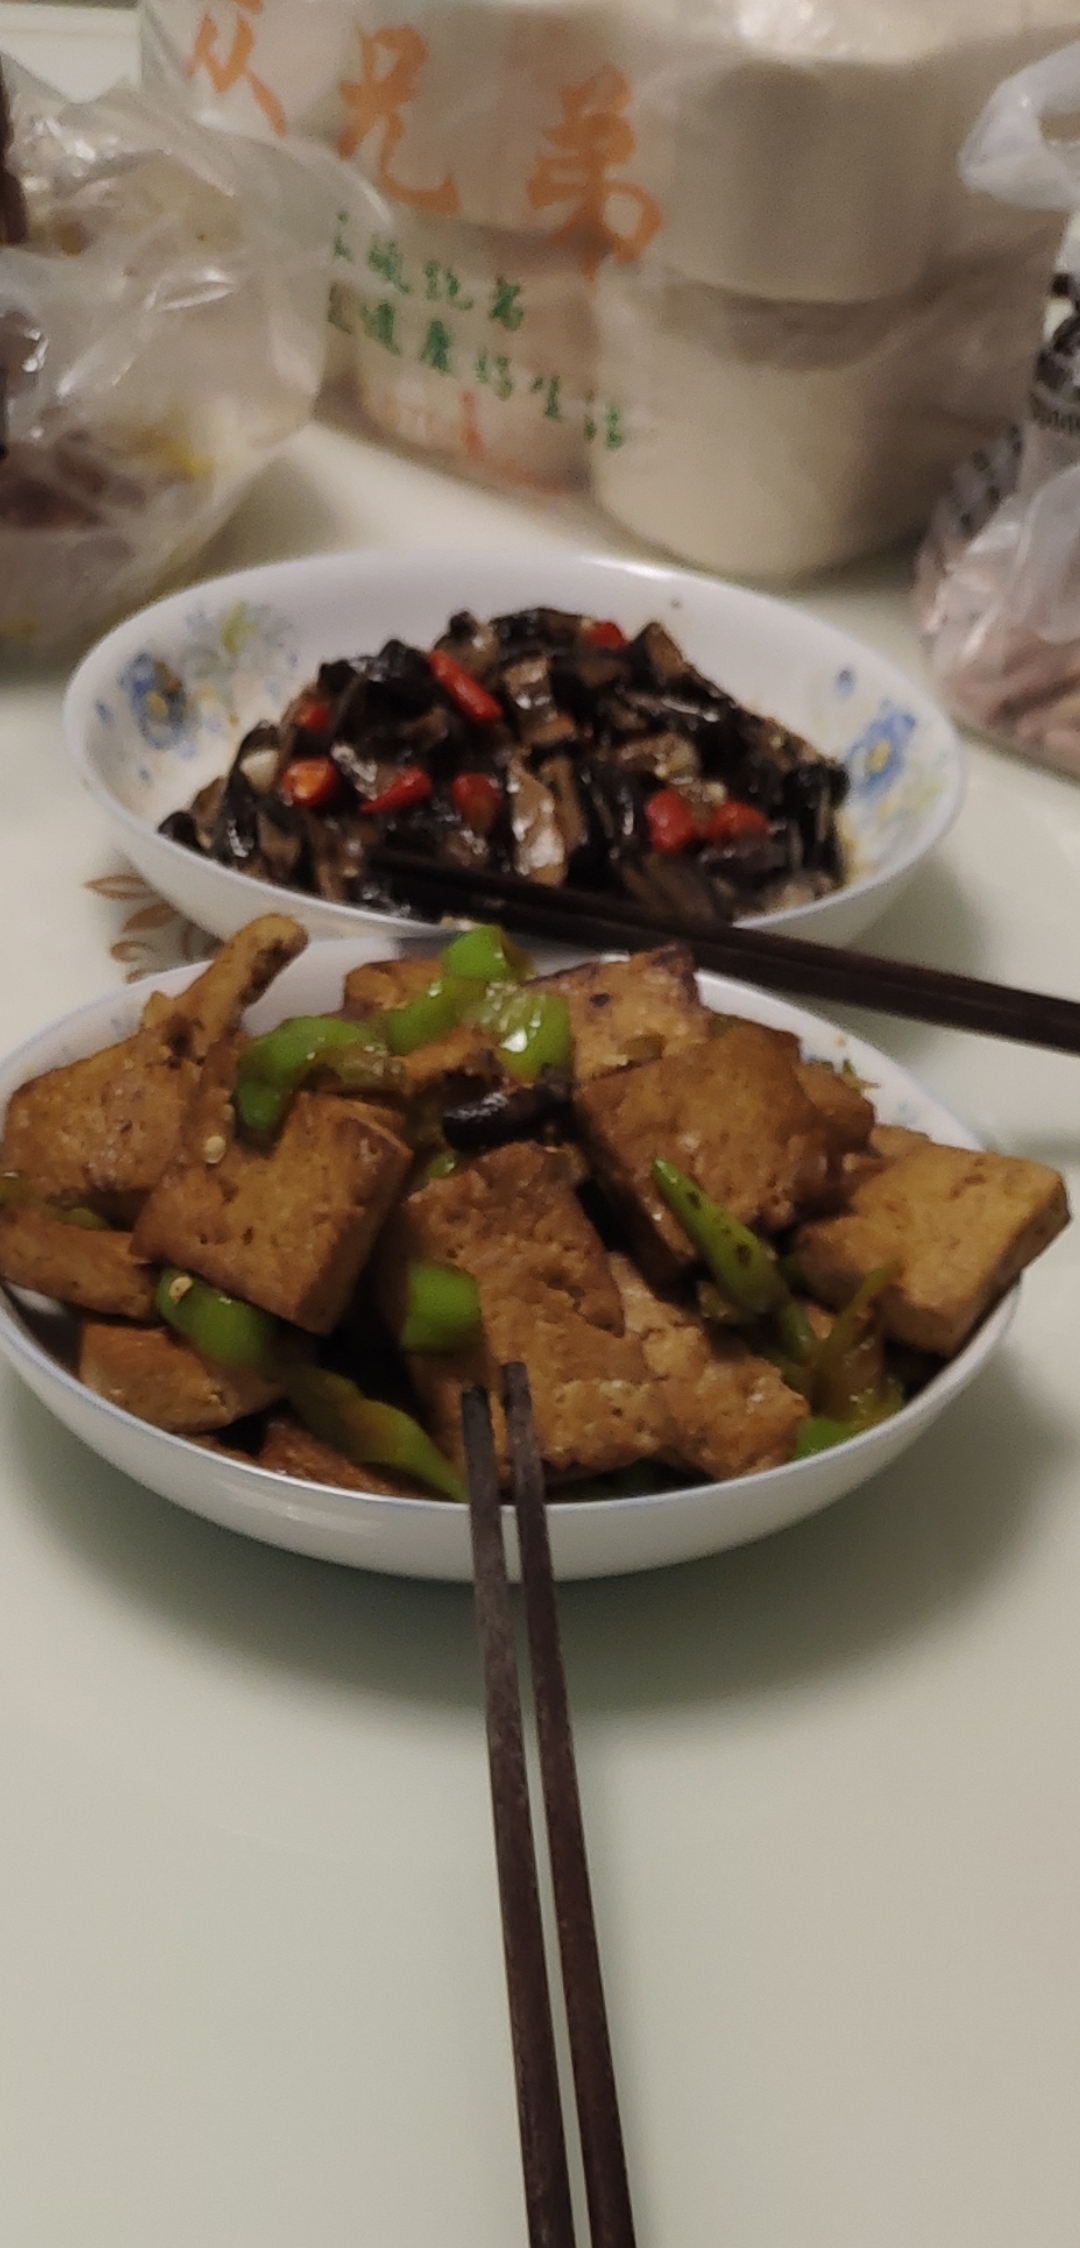 青椒炒豆腐